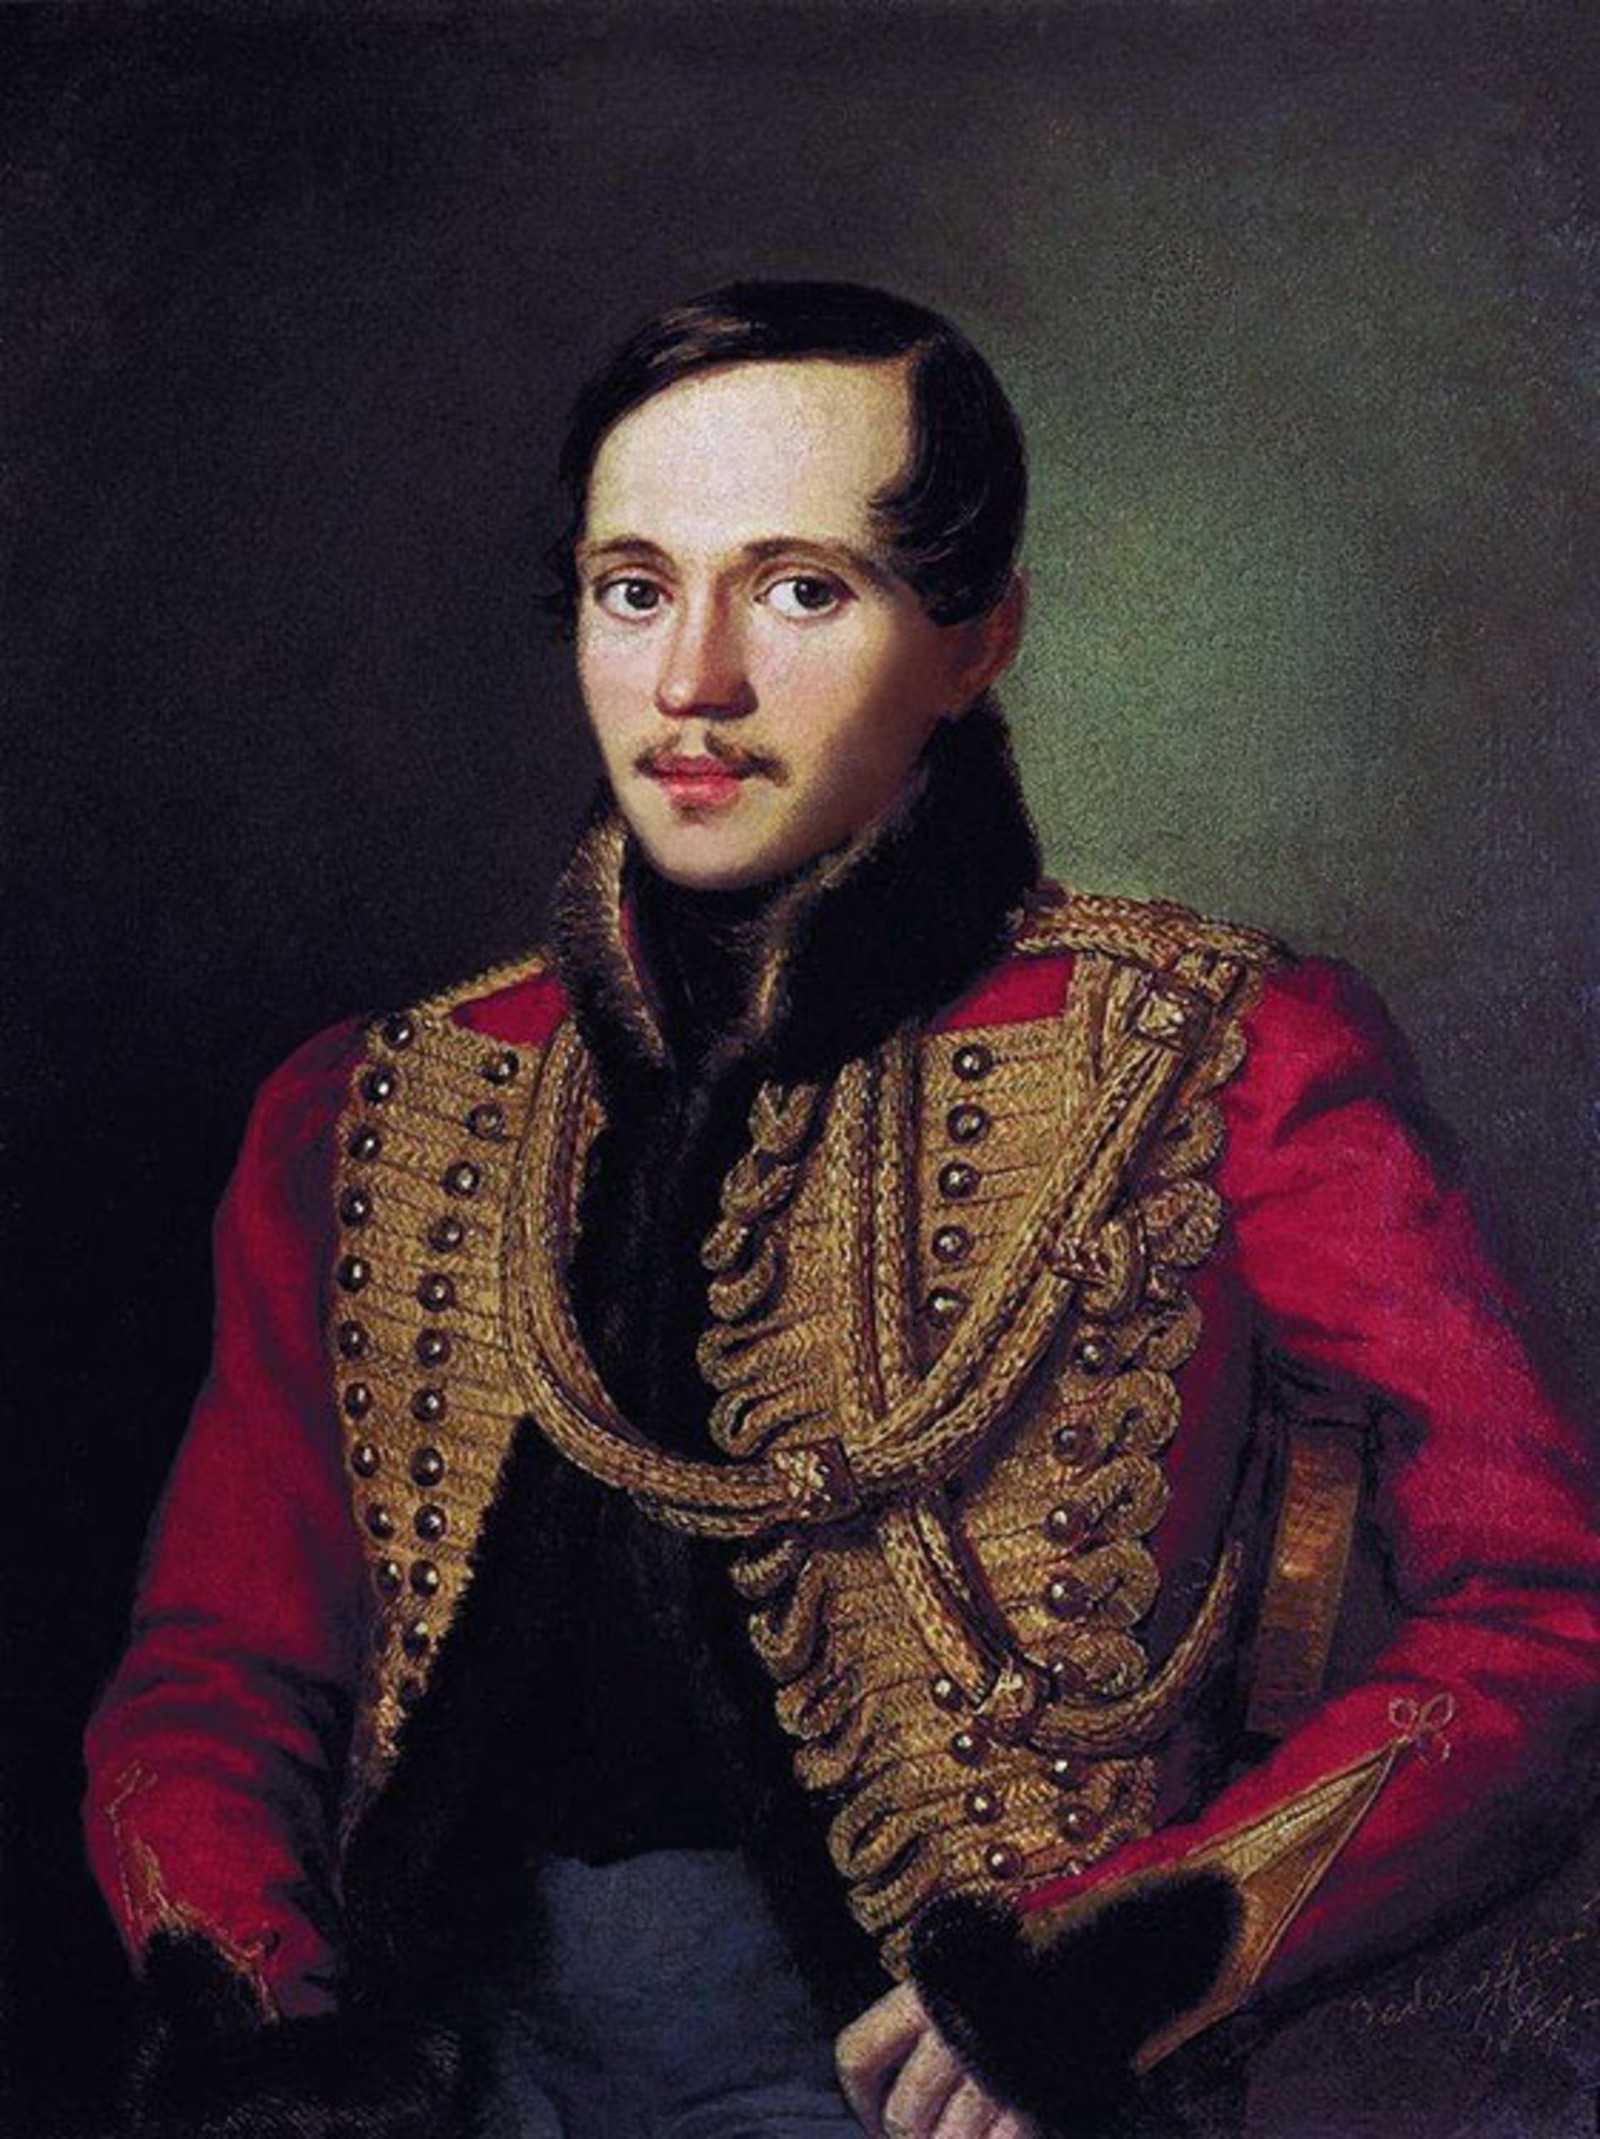 Михаил Юрьевич Лермонтов (1814 - 1841), русский поэт, прозаик, драматург, художник.